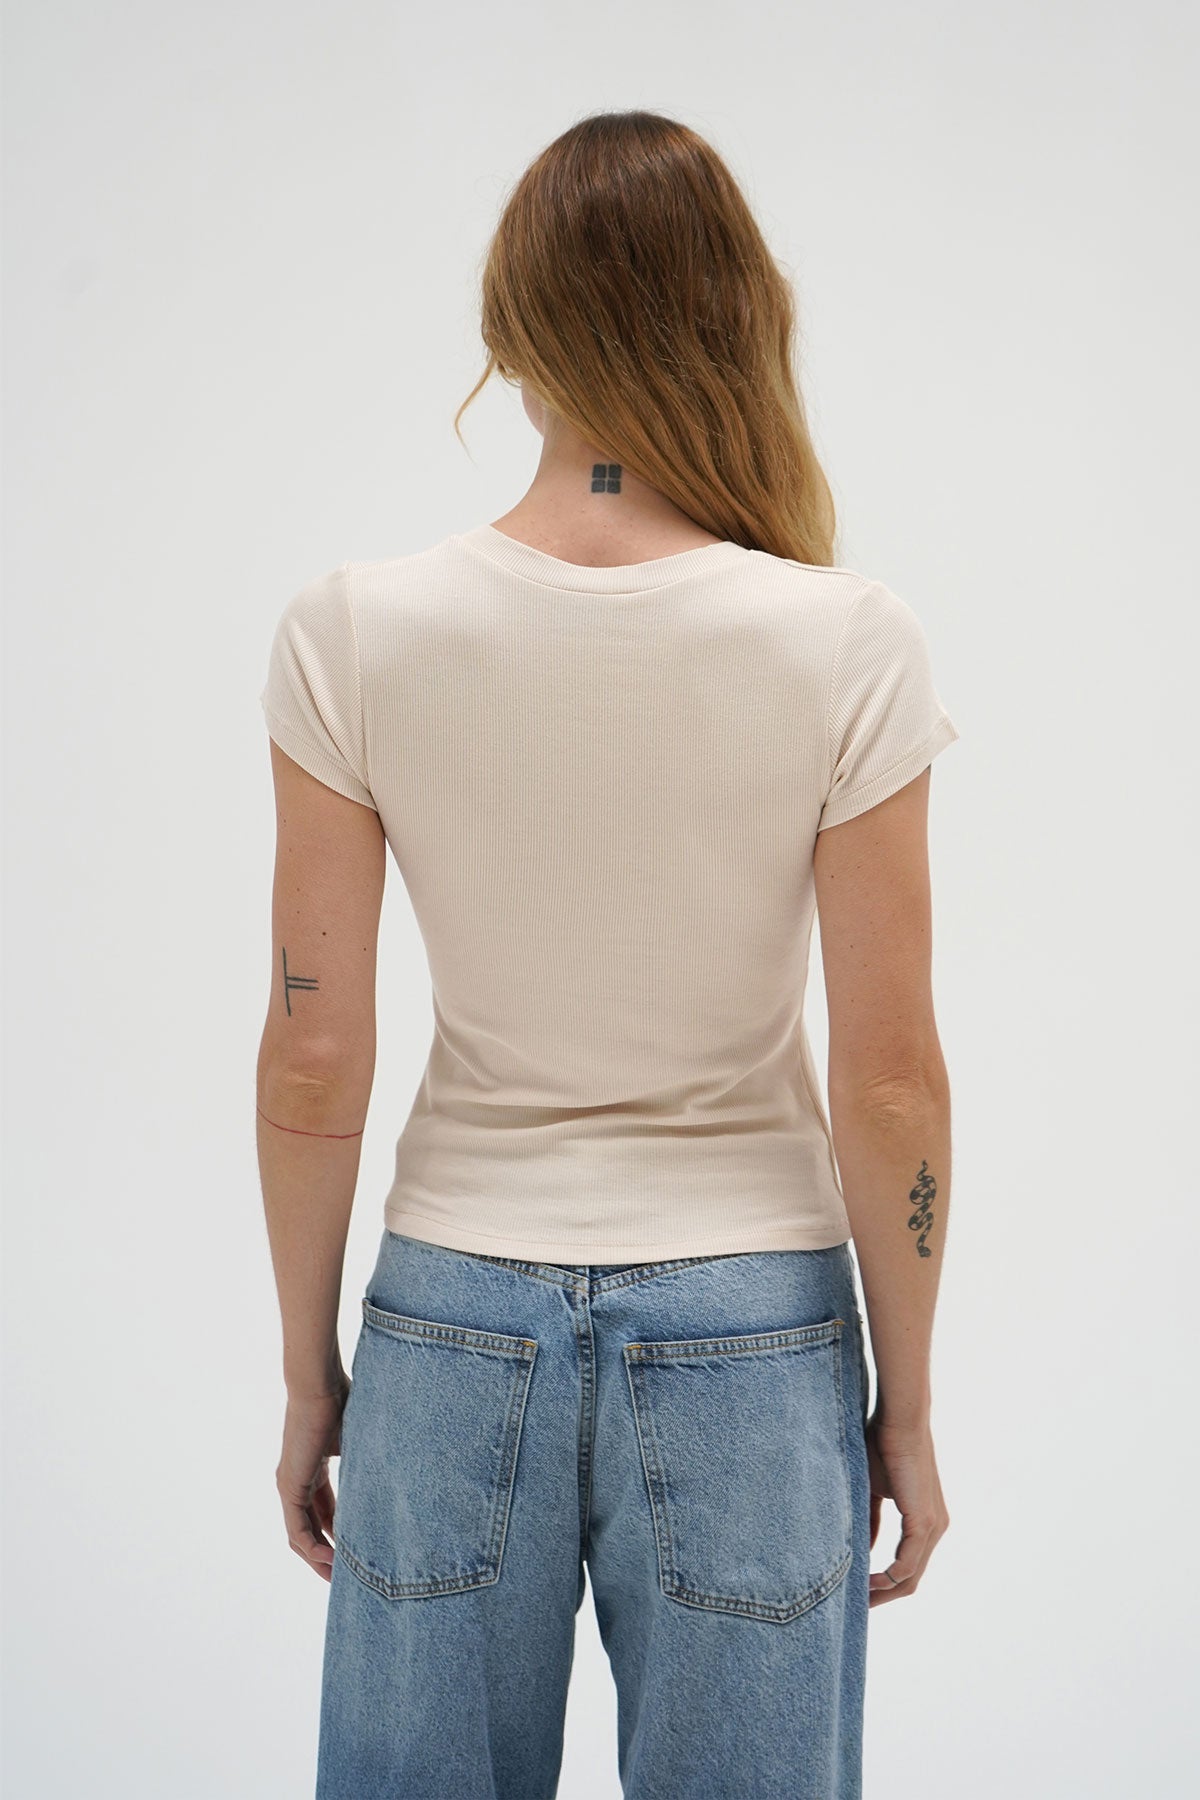 LNA Tailliertes, geripptes T-Shirt mit V-Ausschnitt in Knochen